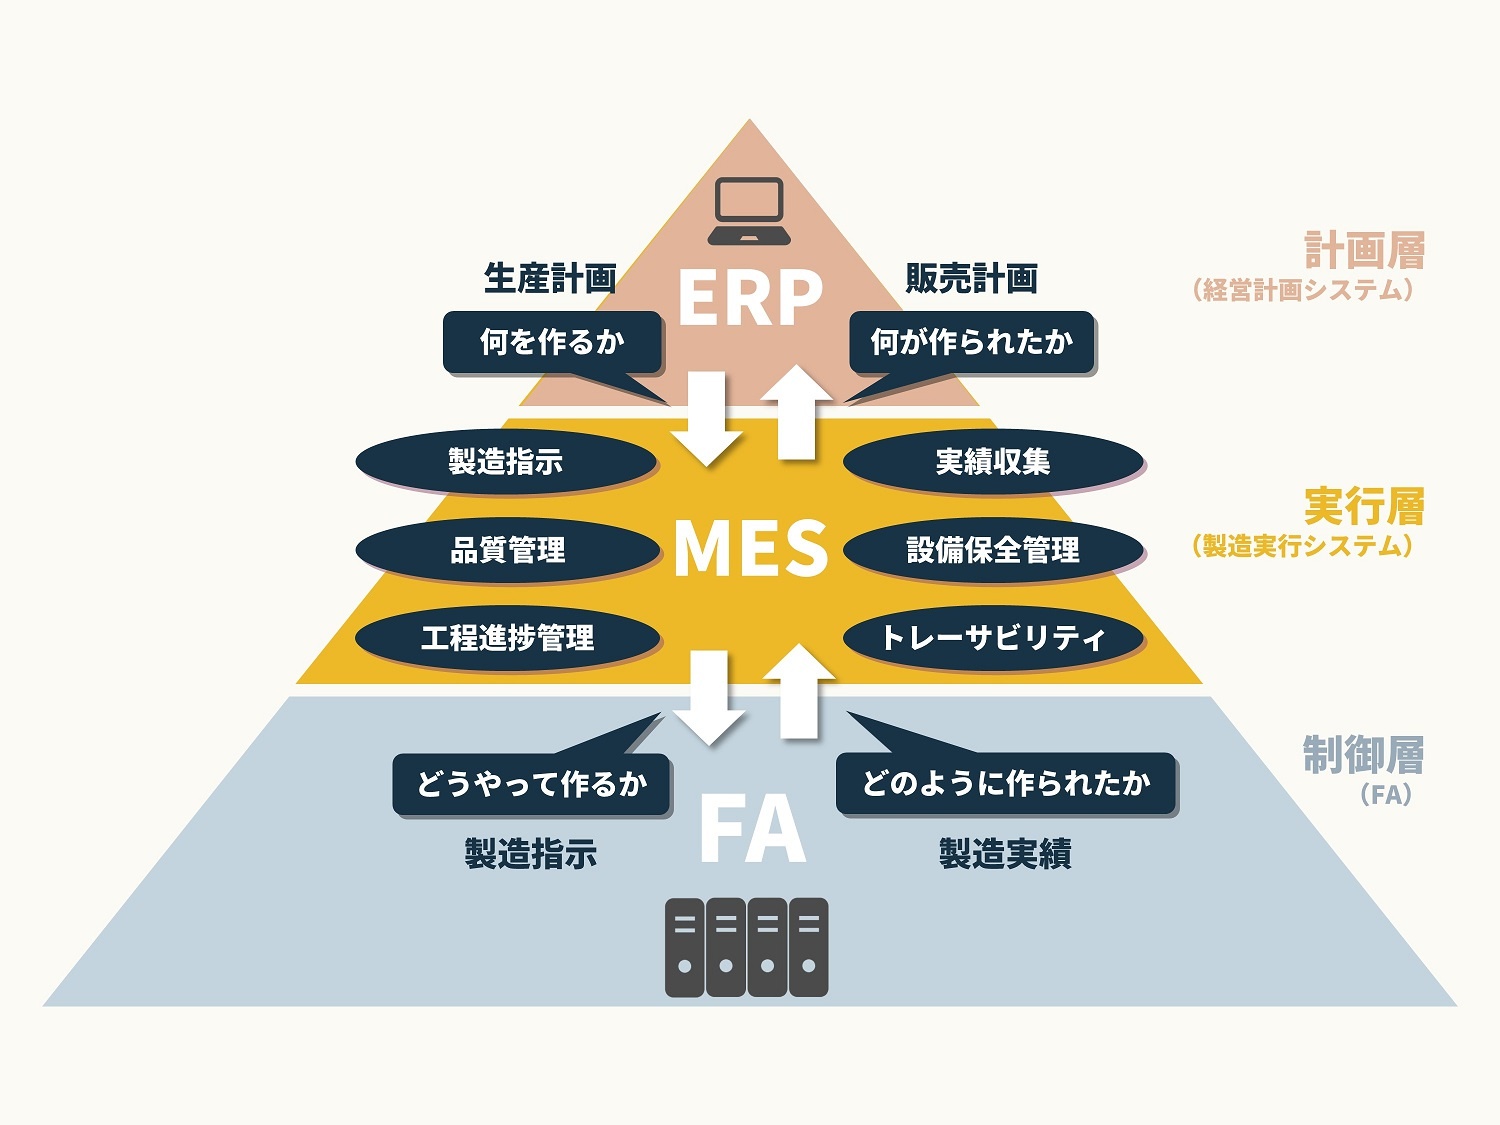 図解 MES活用最前線 実践事例でわかるMES(製造実行システム)導入の 